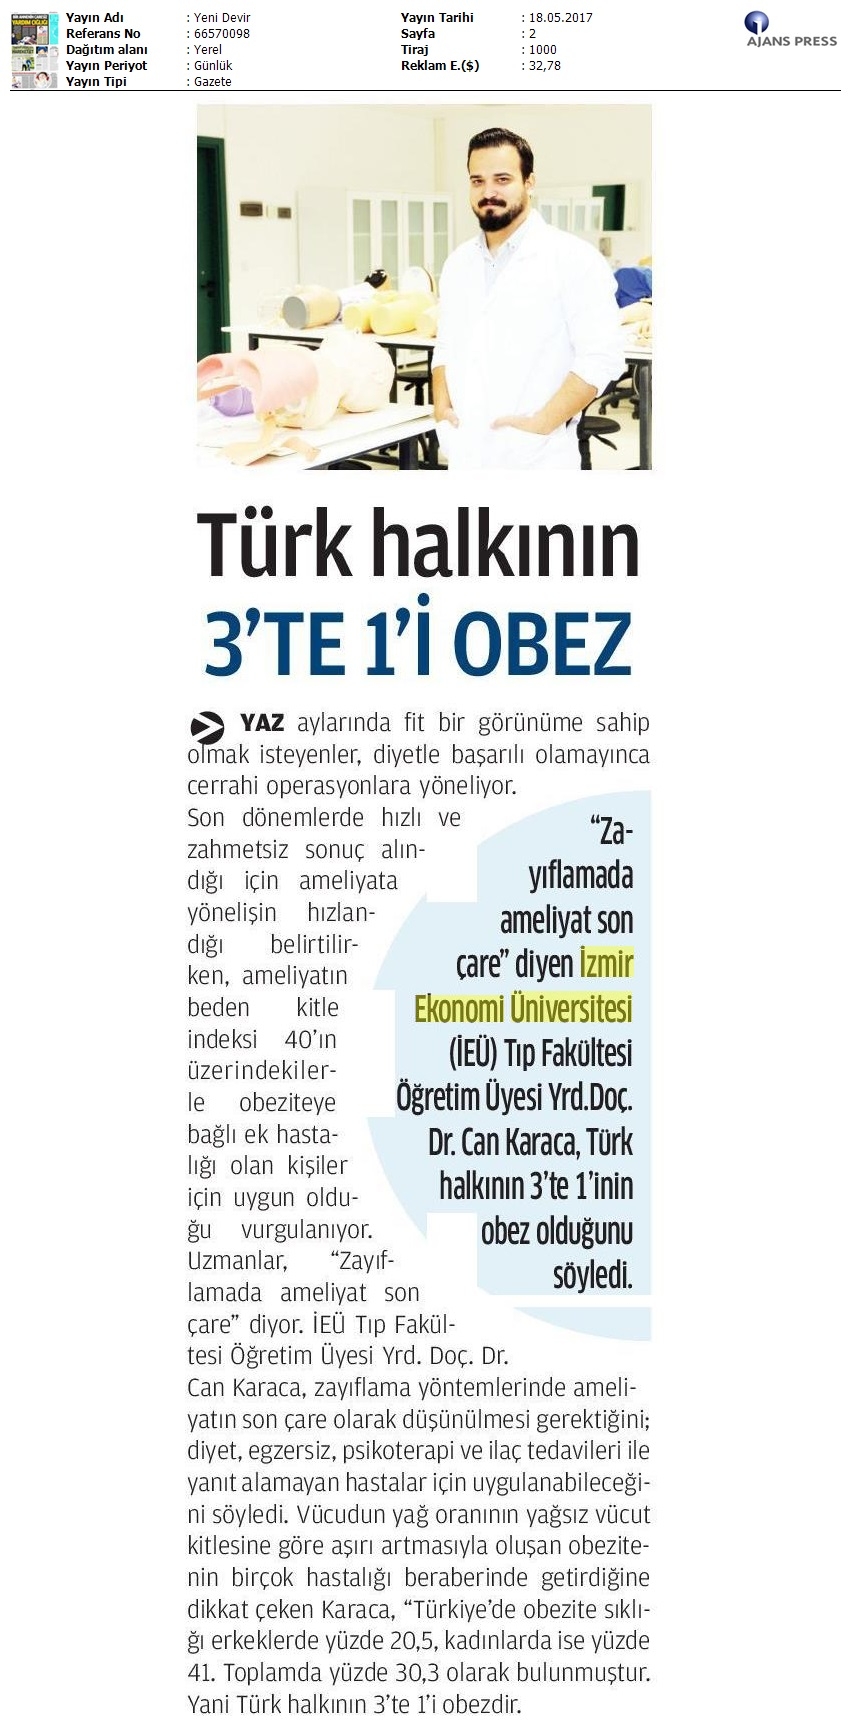 Türk halkının 3te 1i obez